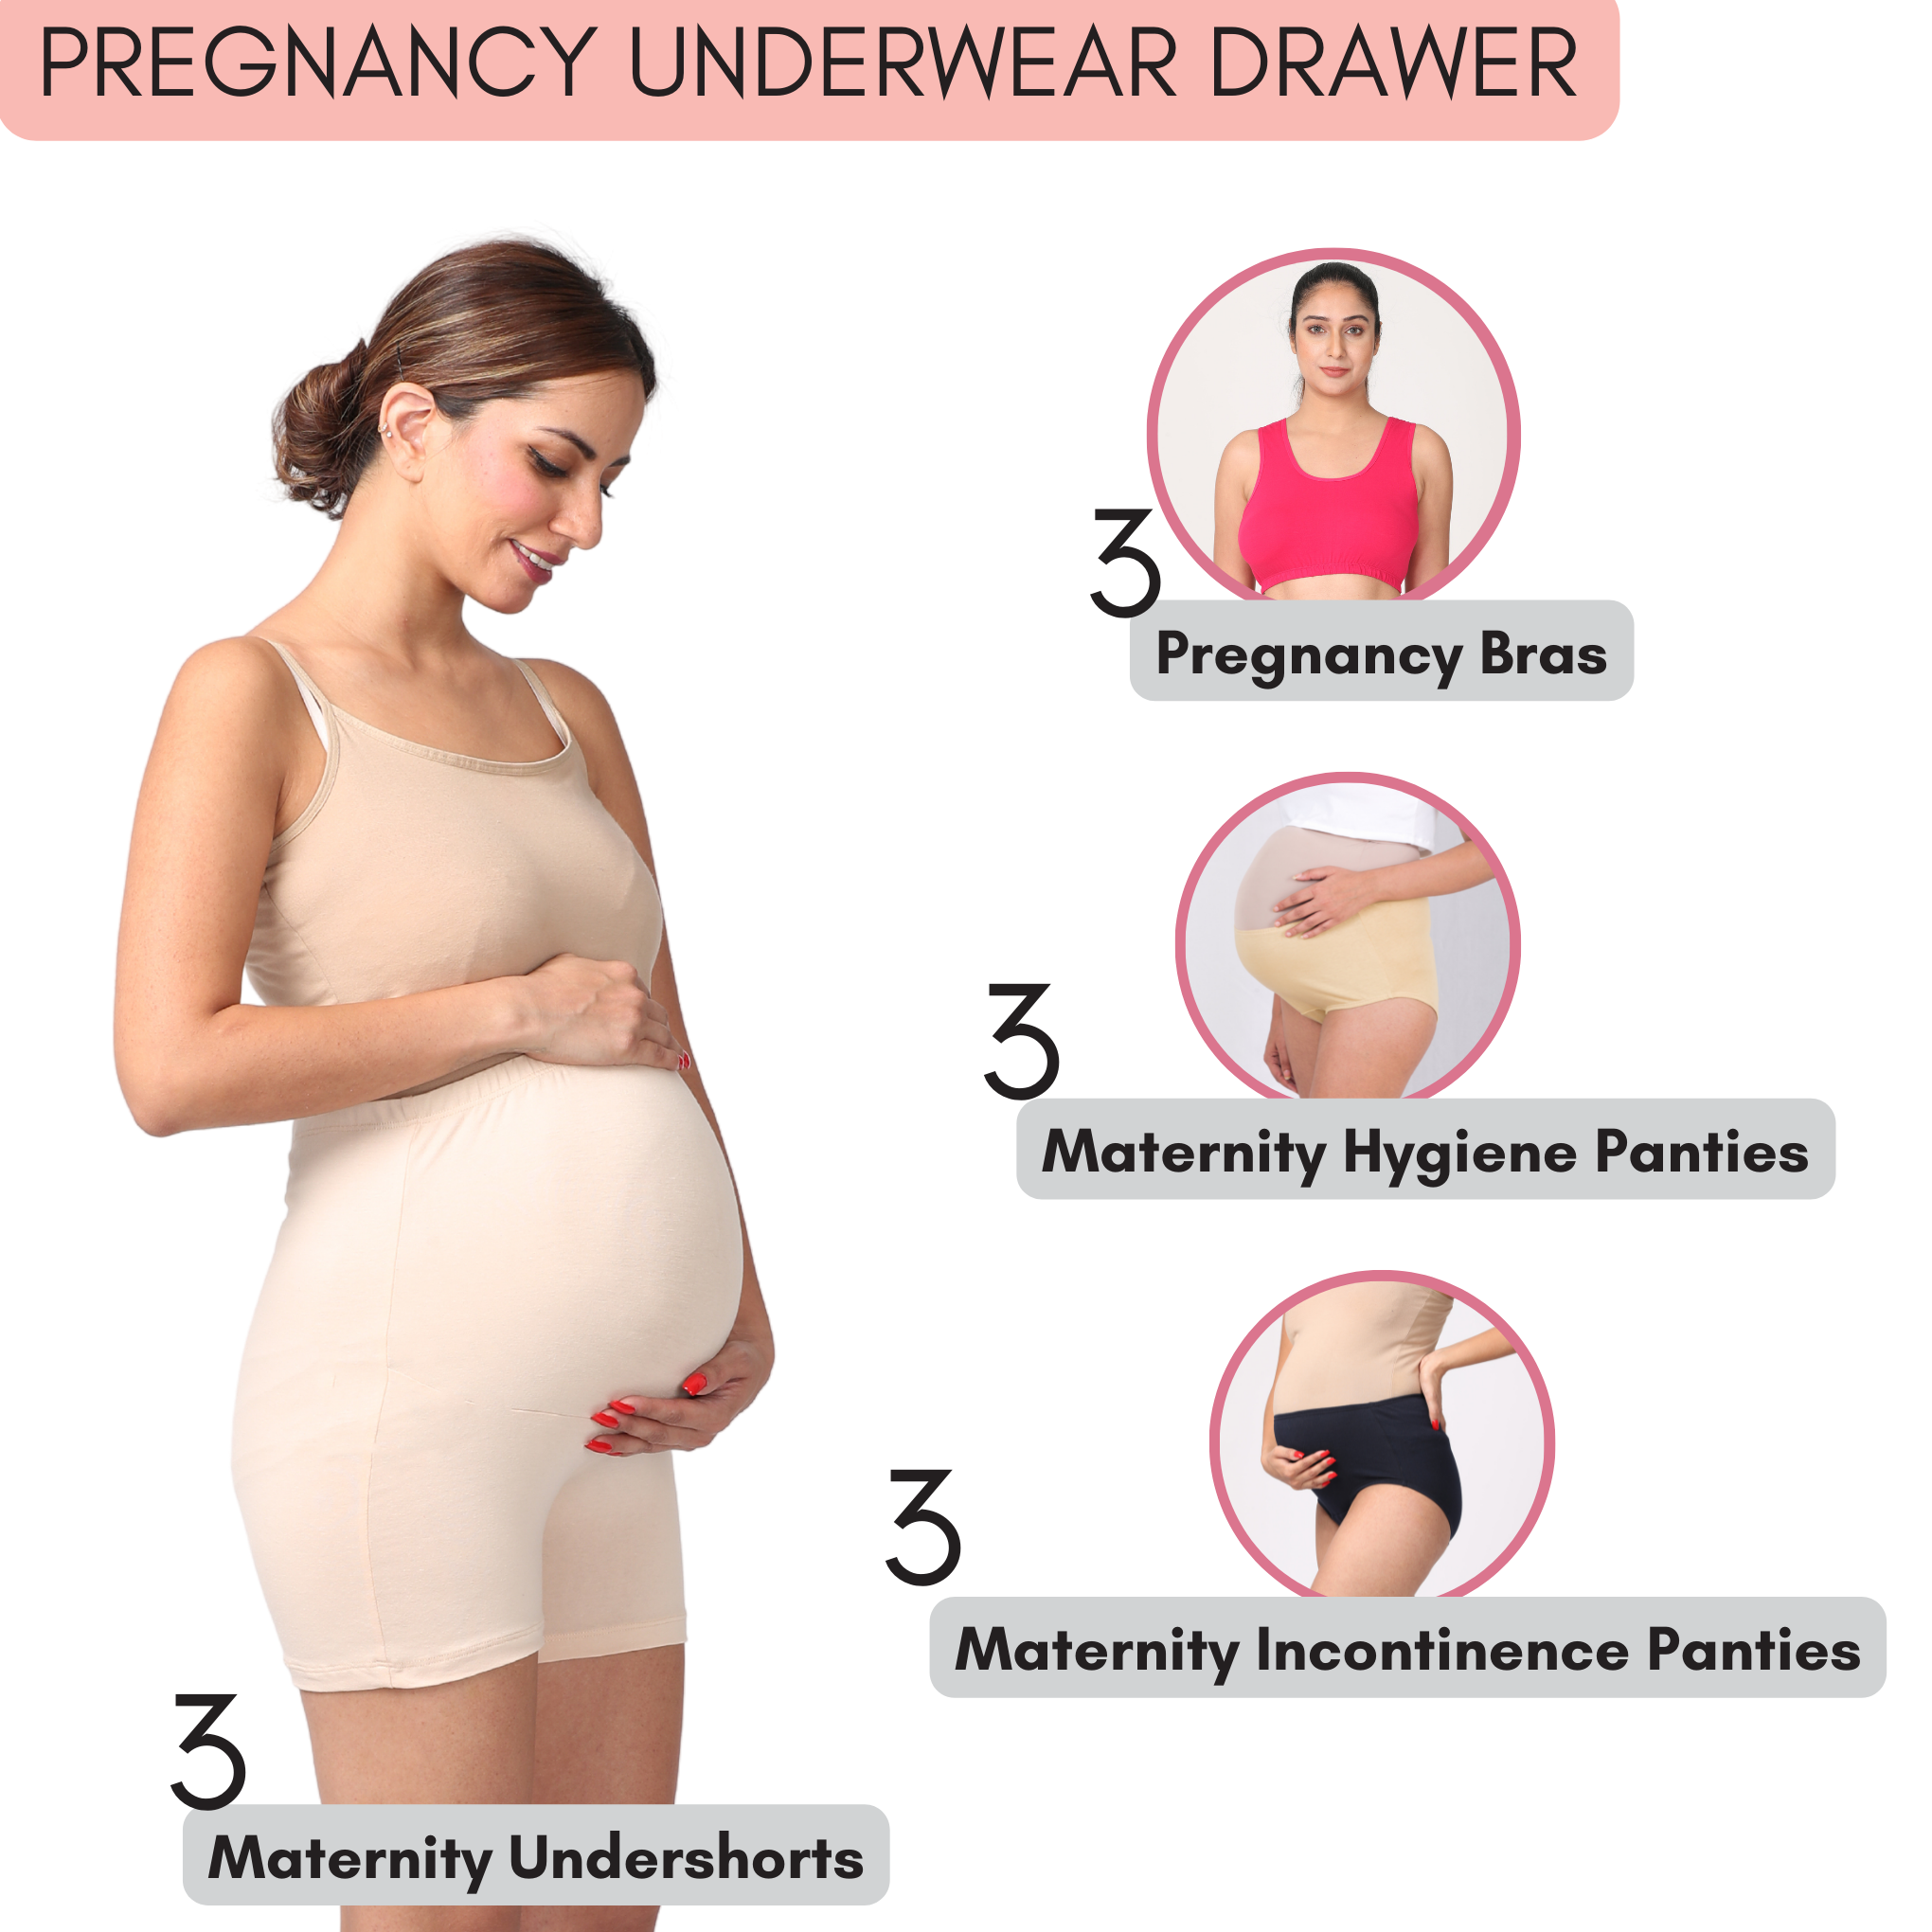 Pregnancy Underwear Drawer